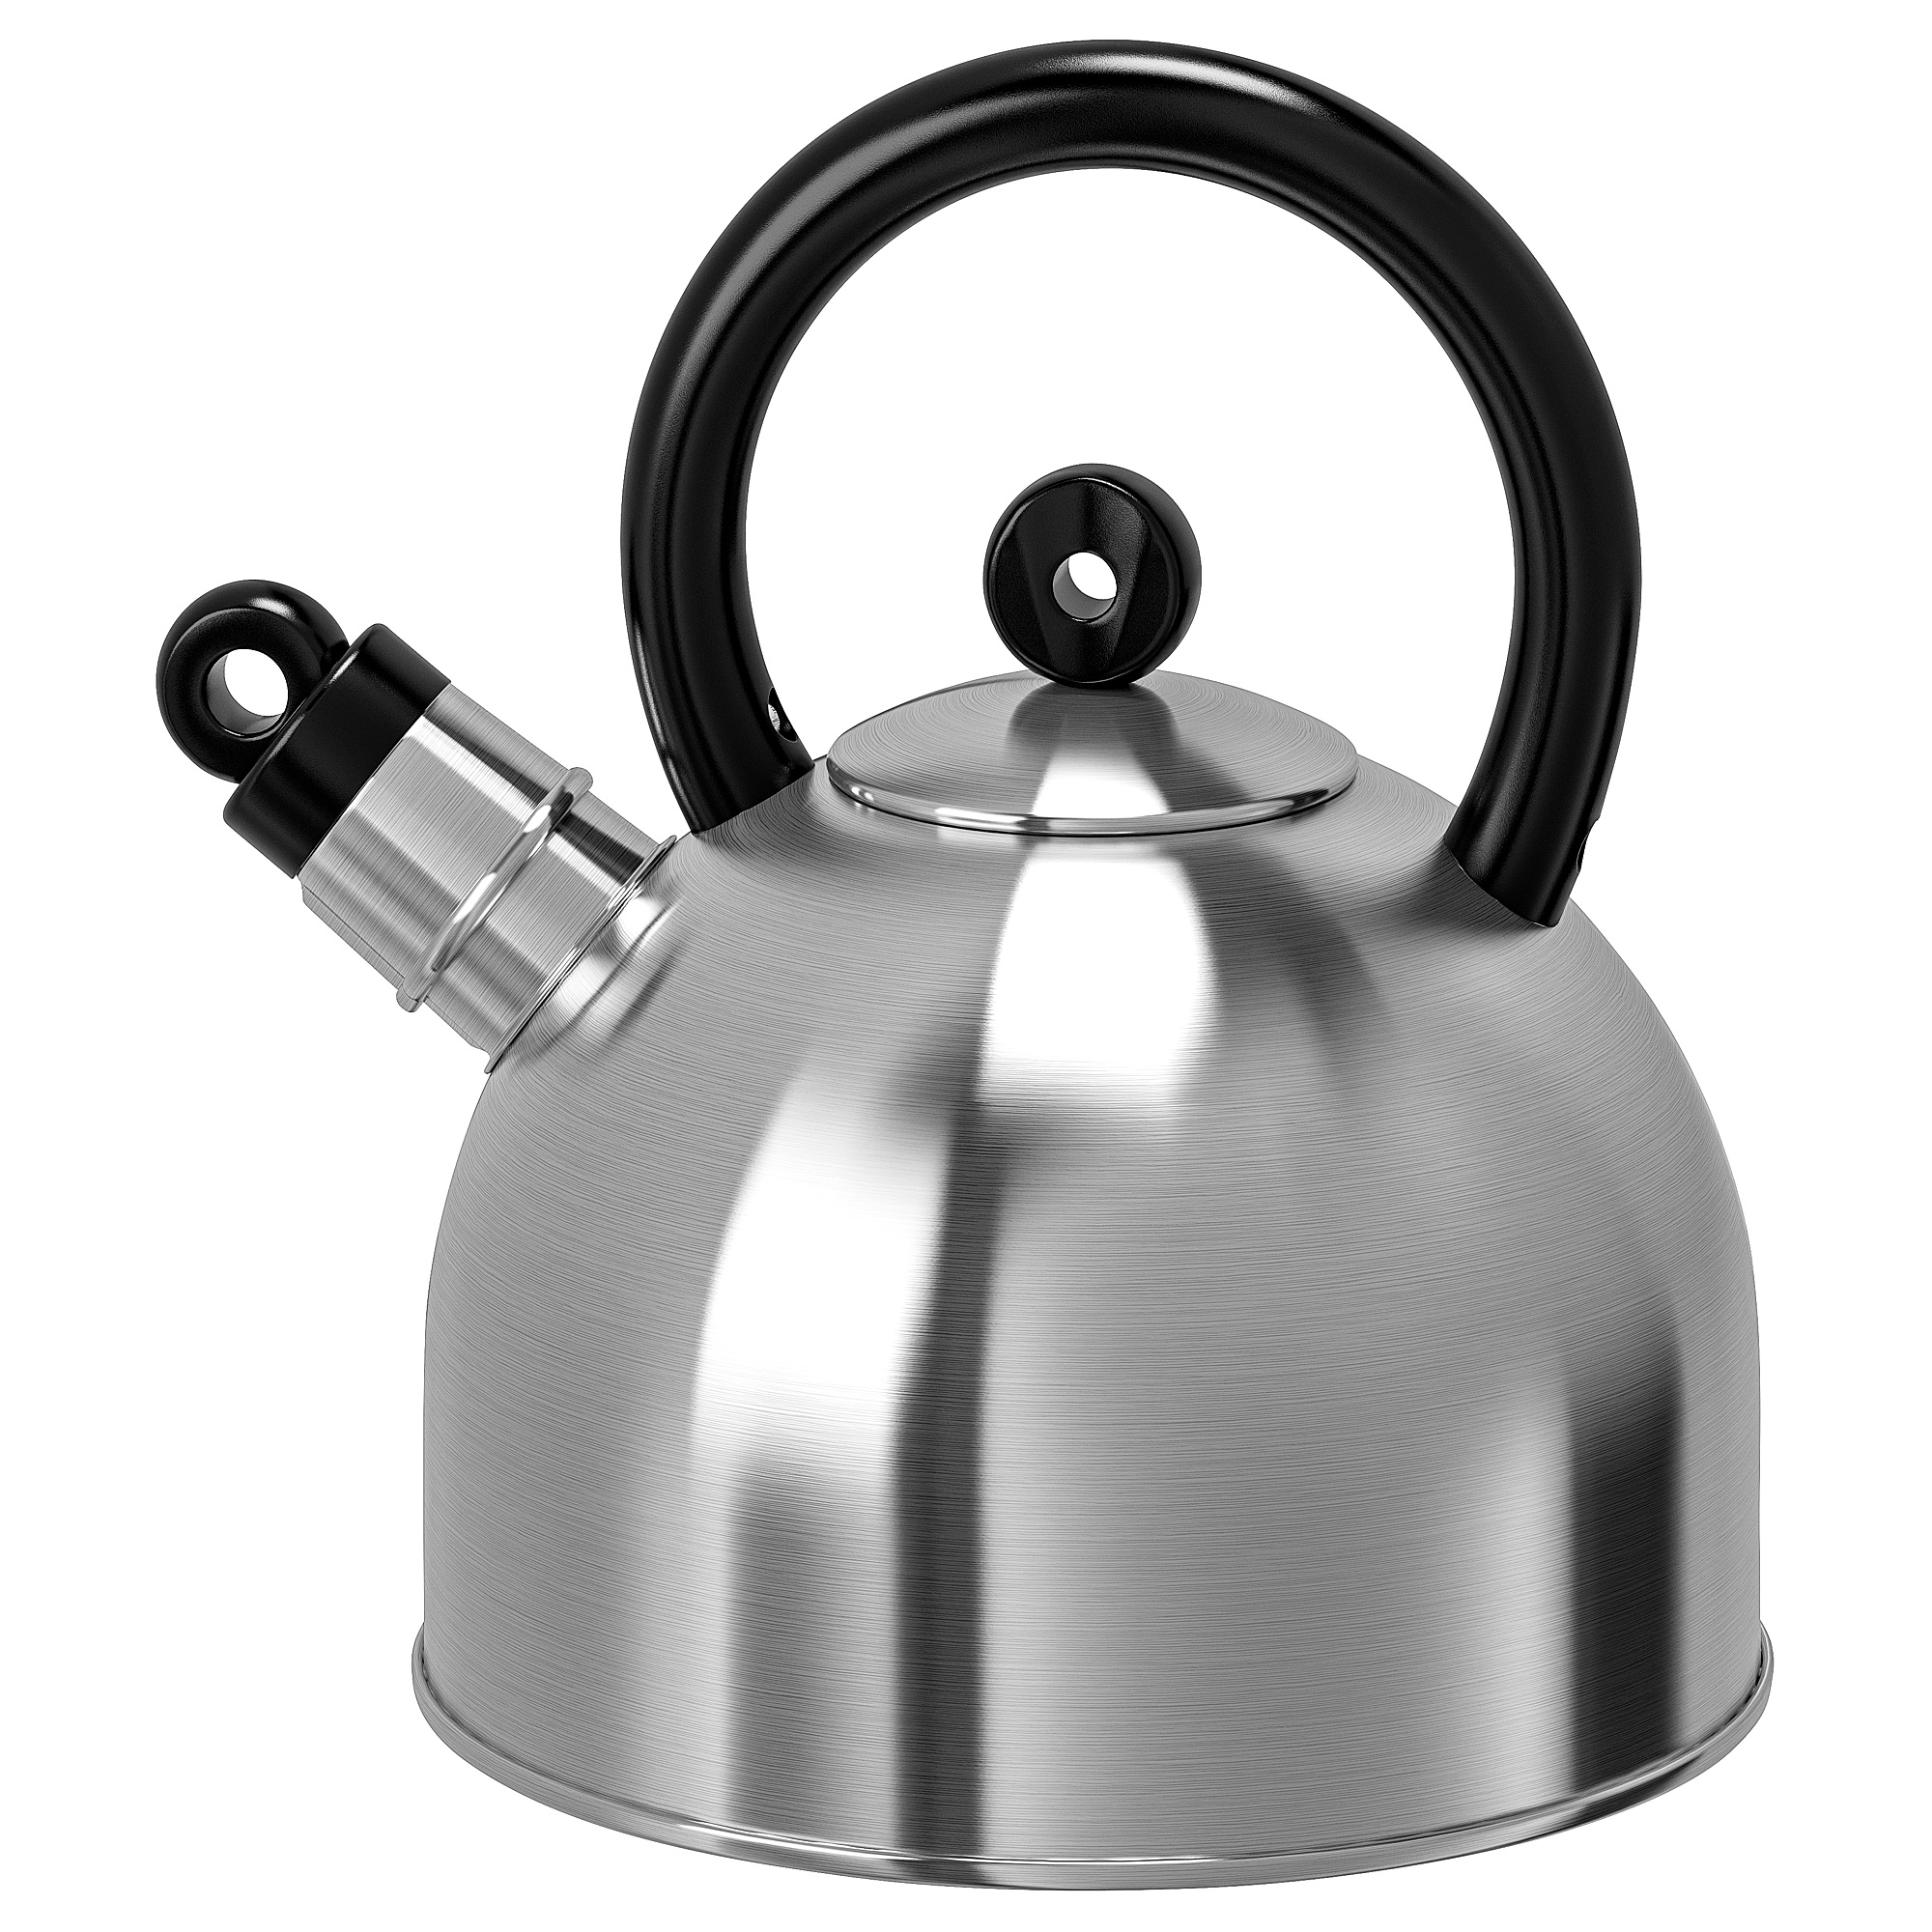 RIKLIG Teapot, glass, Height: 4 Volume: 0.6 qt - IKEA